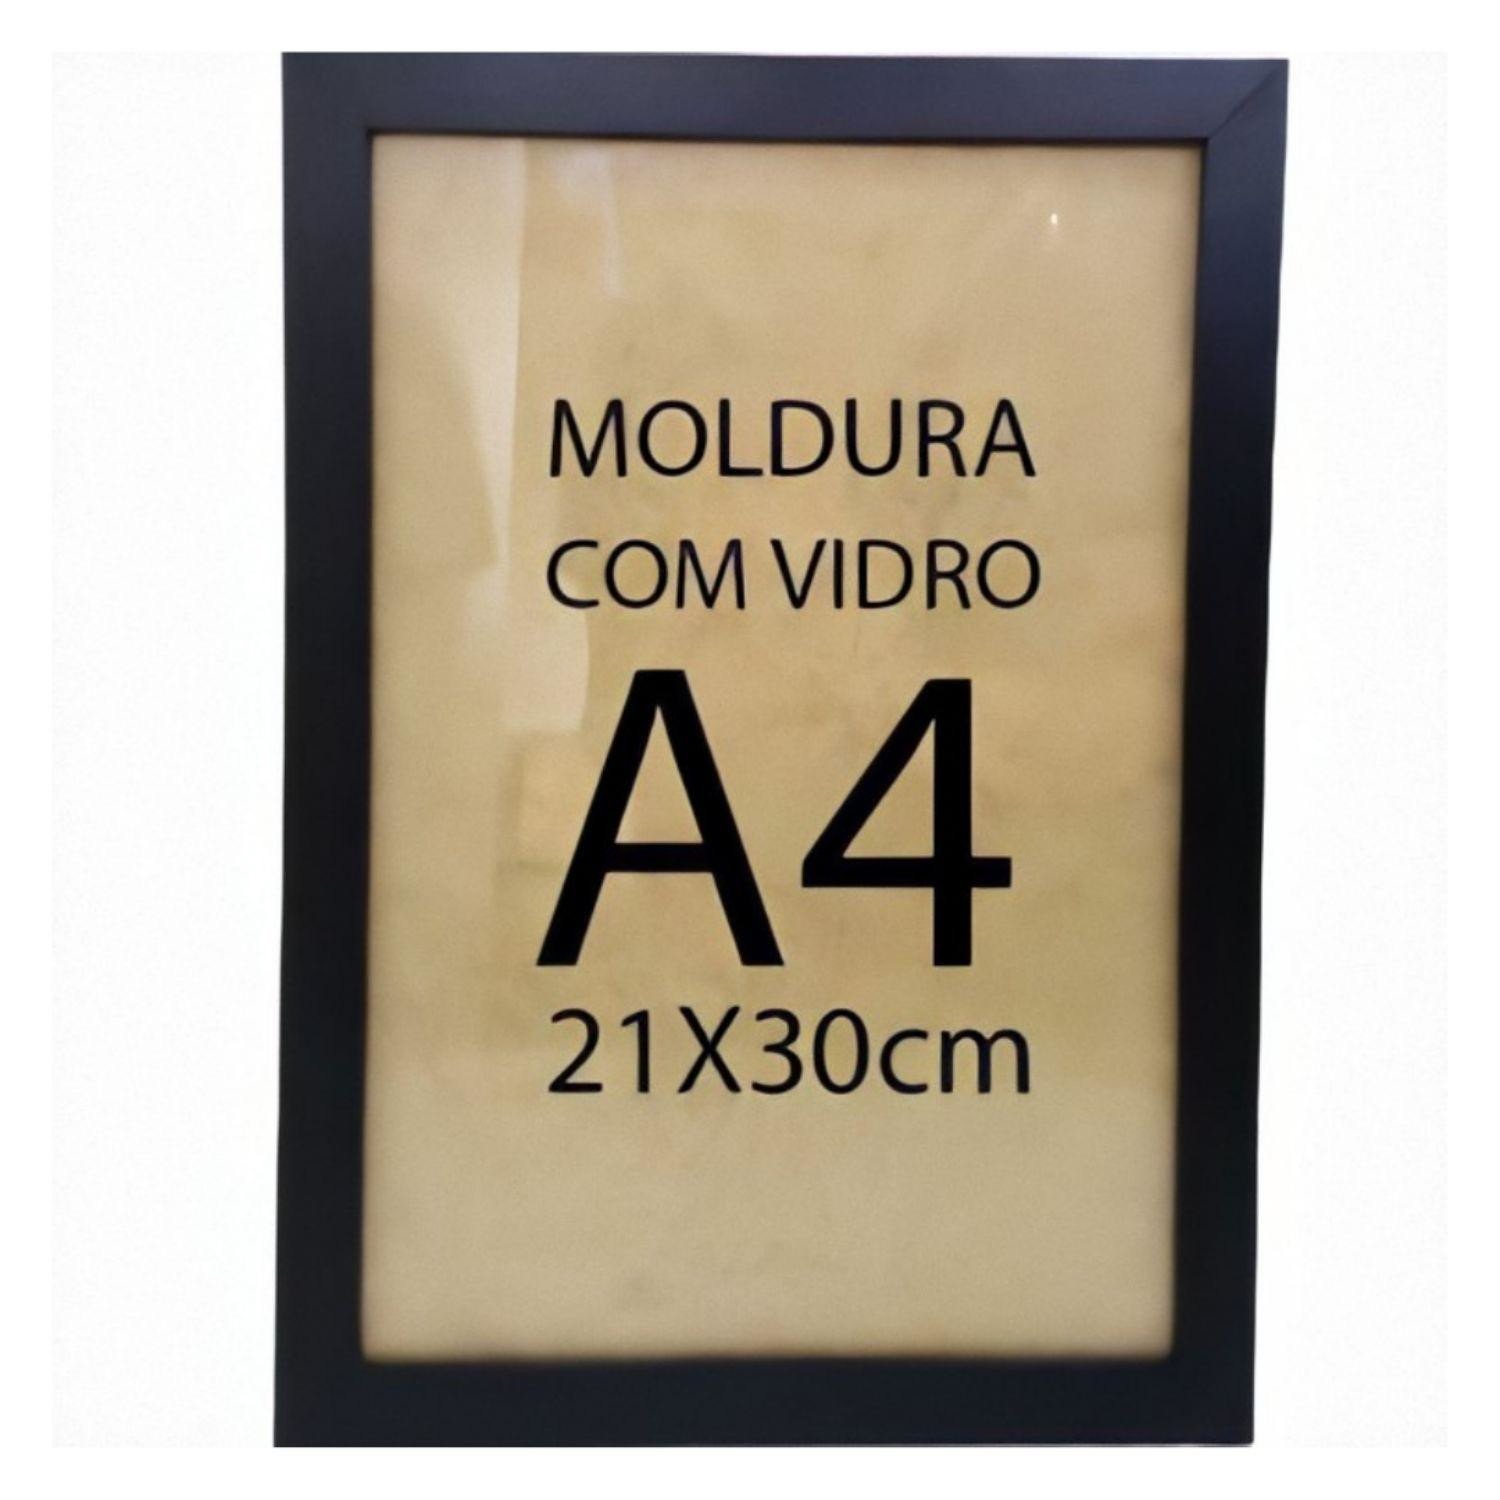 Moldura Quadro A4 21x30cm Diploma Certificado Foto com Vidro Empório do Adesivo Moldura Preta 02 Uni